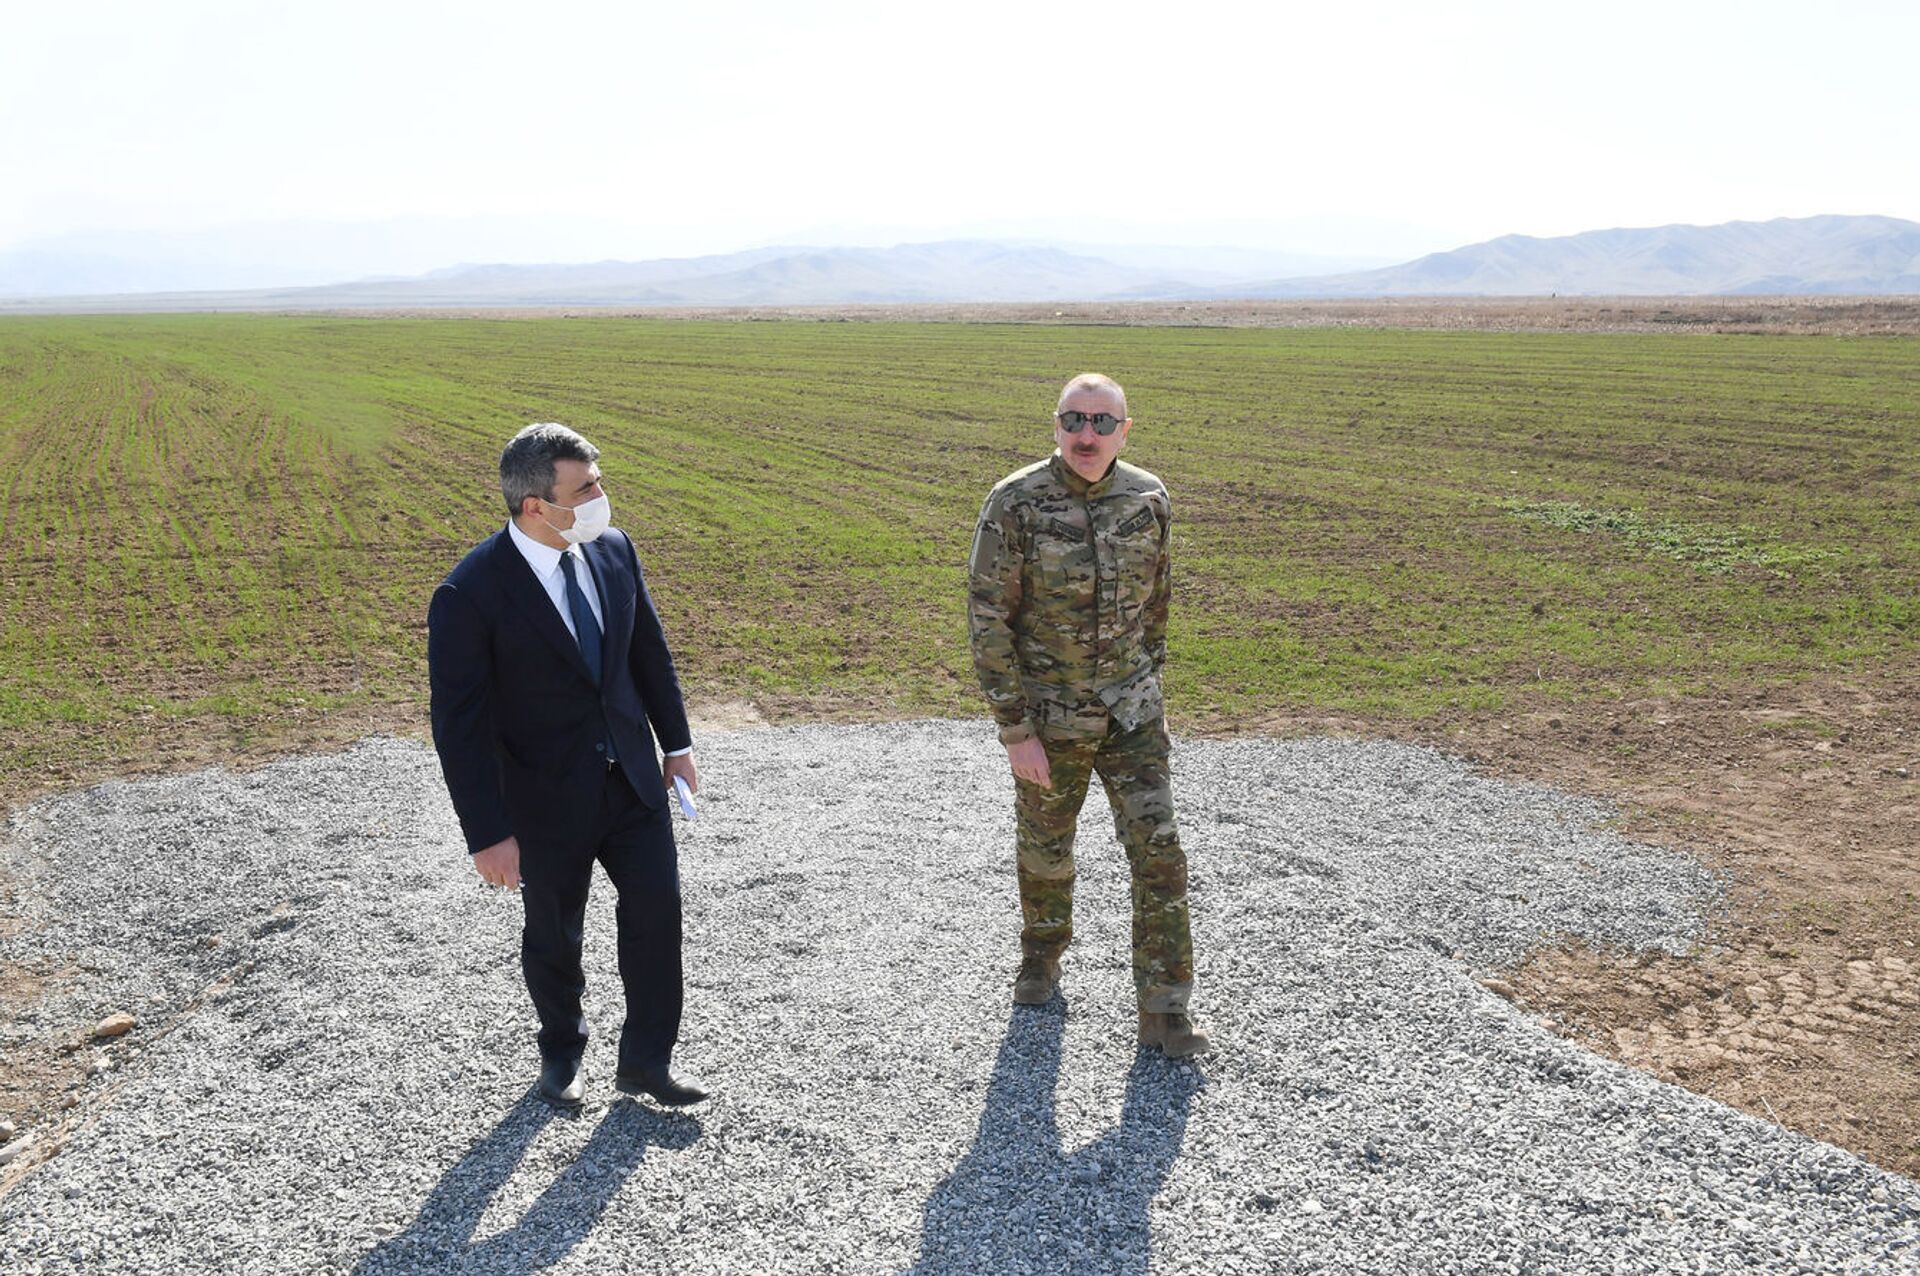 Принимаются меры по восстановлению земель: президент Алиев открыл ряд важных объектов - Sputnik Азербайджан, 1920, 15.02.2021